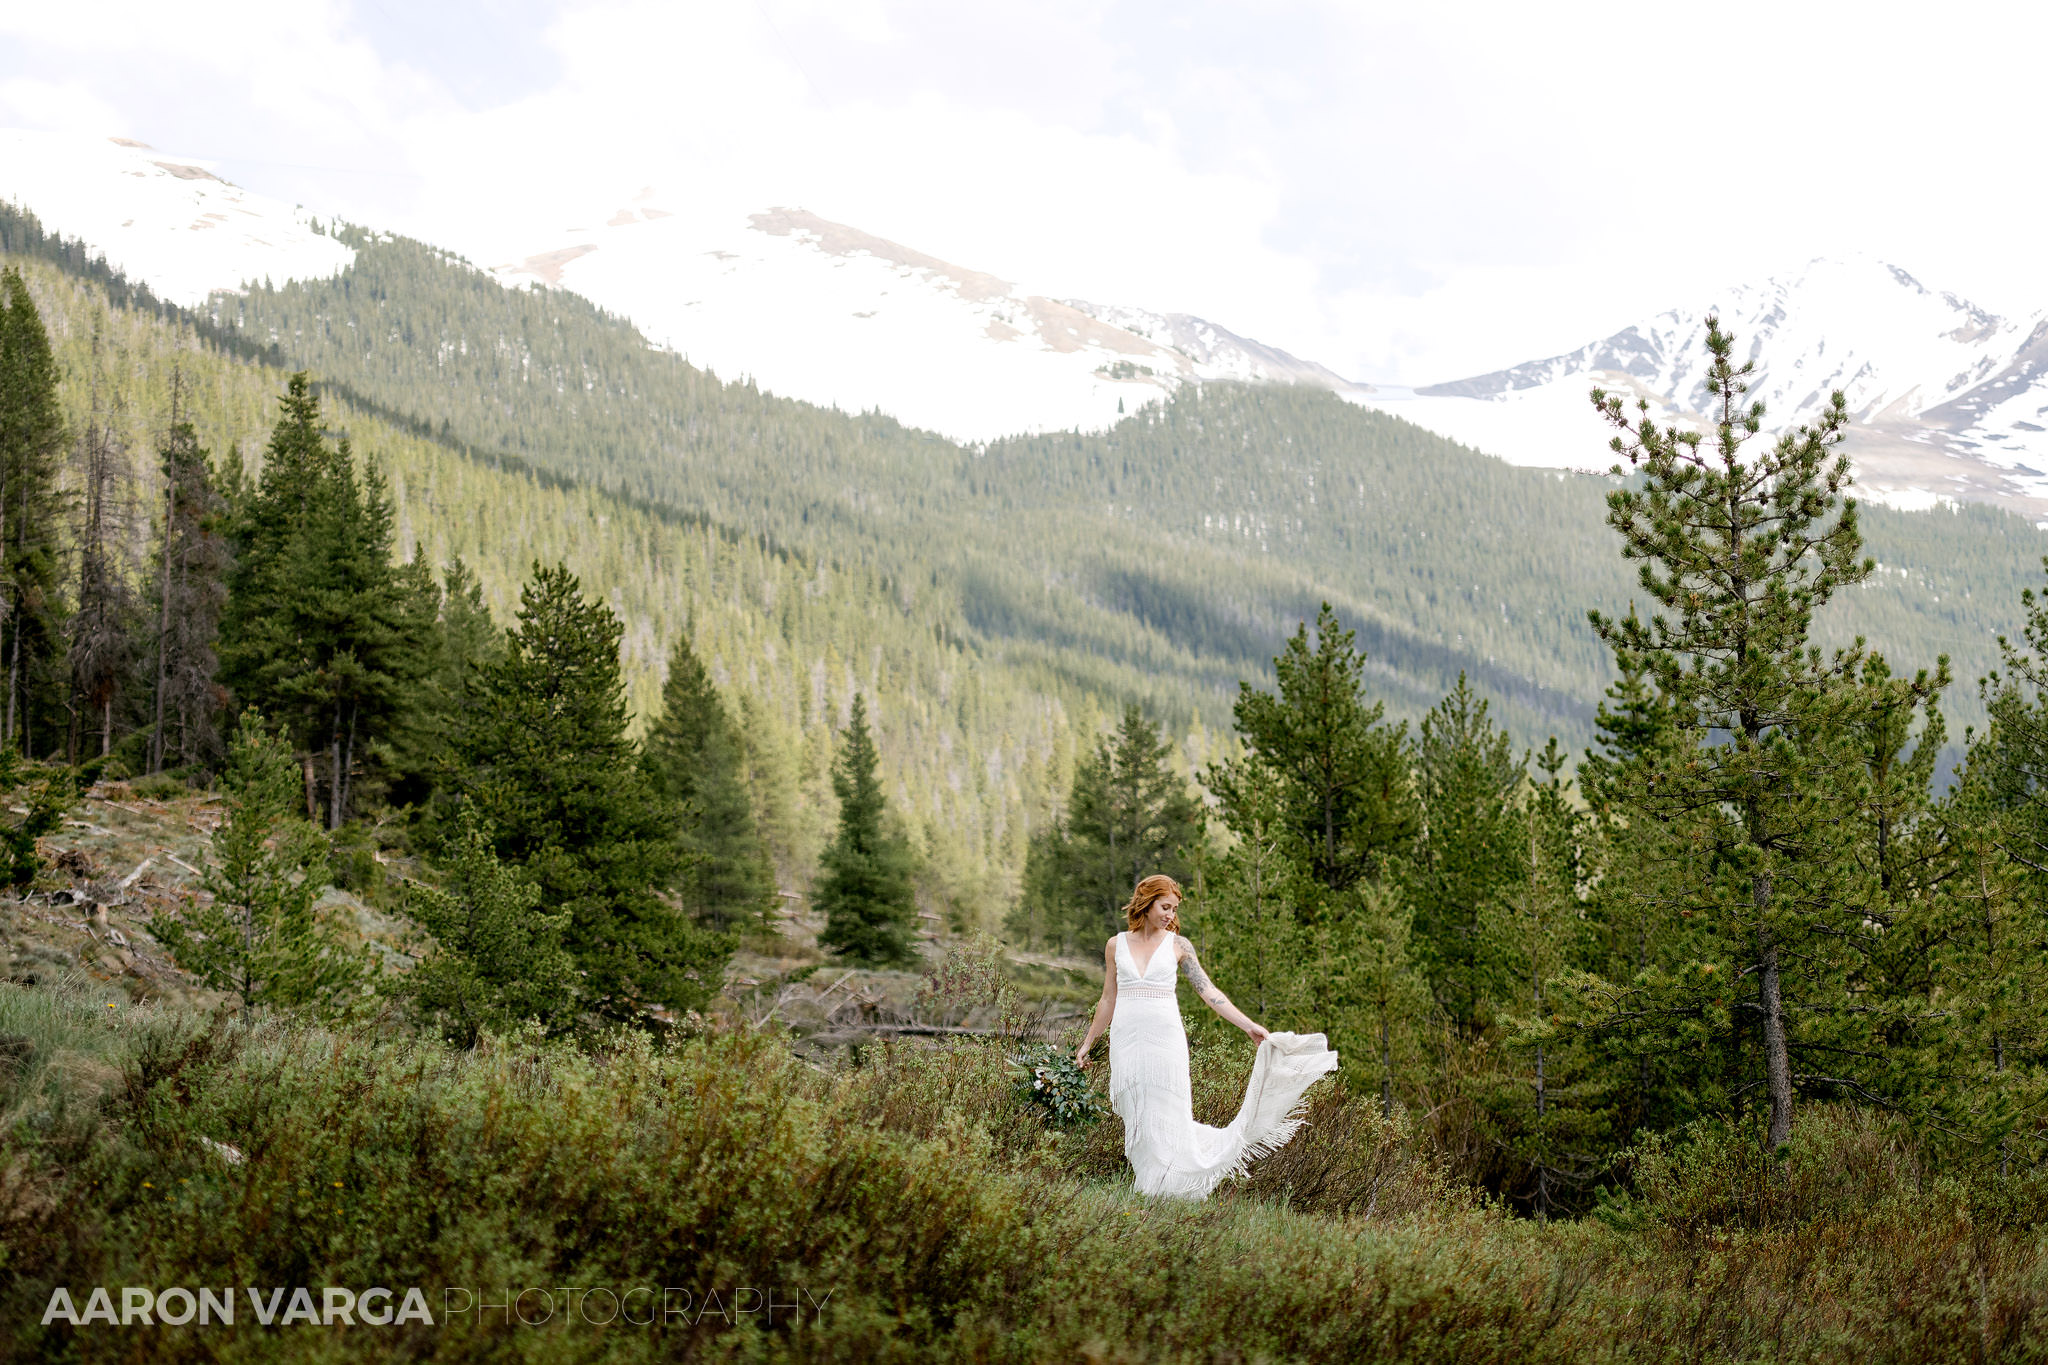 53 epic mountain wedding photo copper mountain - Rachel + Nic | Copper Mountain Colorado Wedding Photos